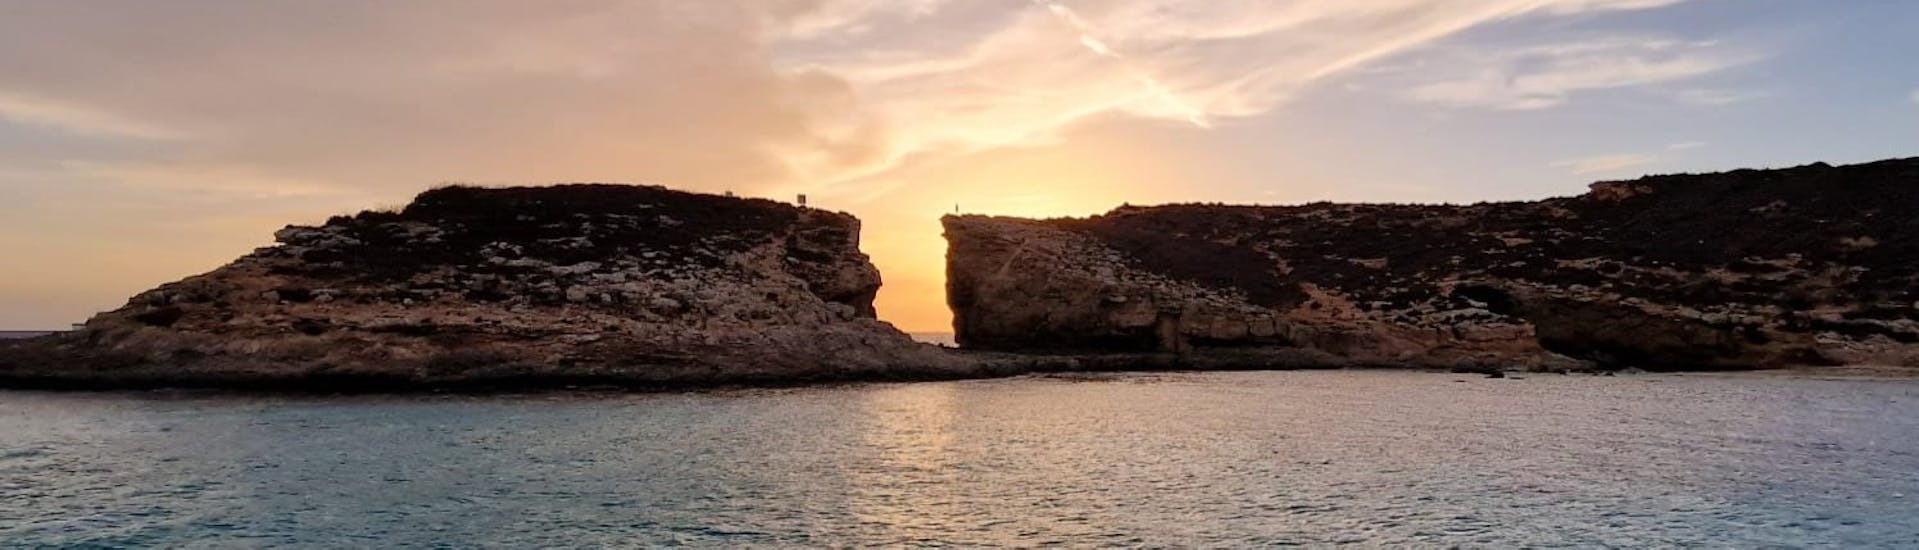 Der Sonnenuntergang während der Private Bootstour zum Sonnenuntergang auf Comino.